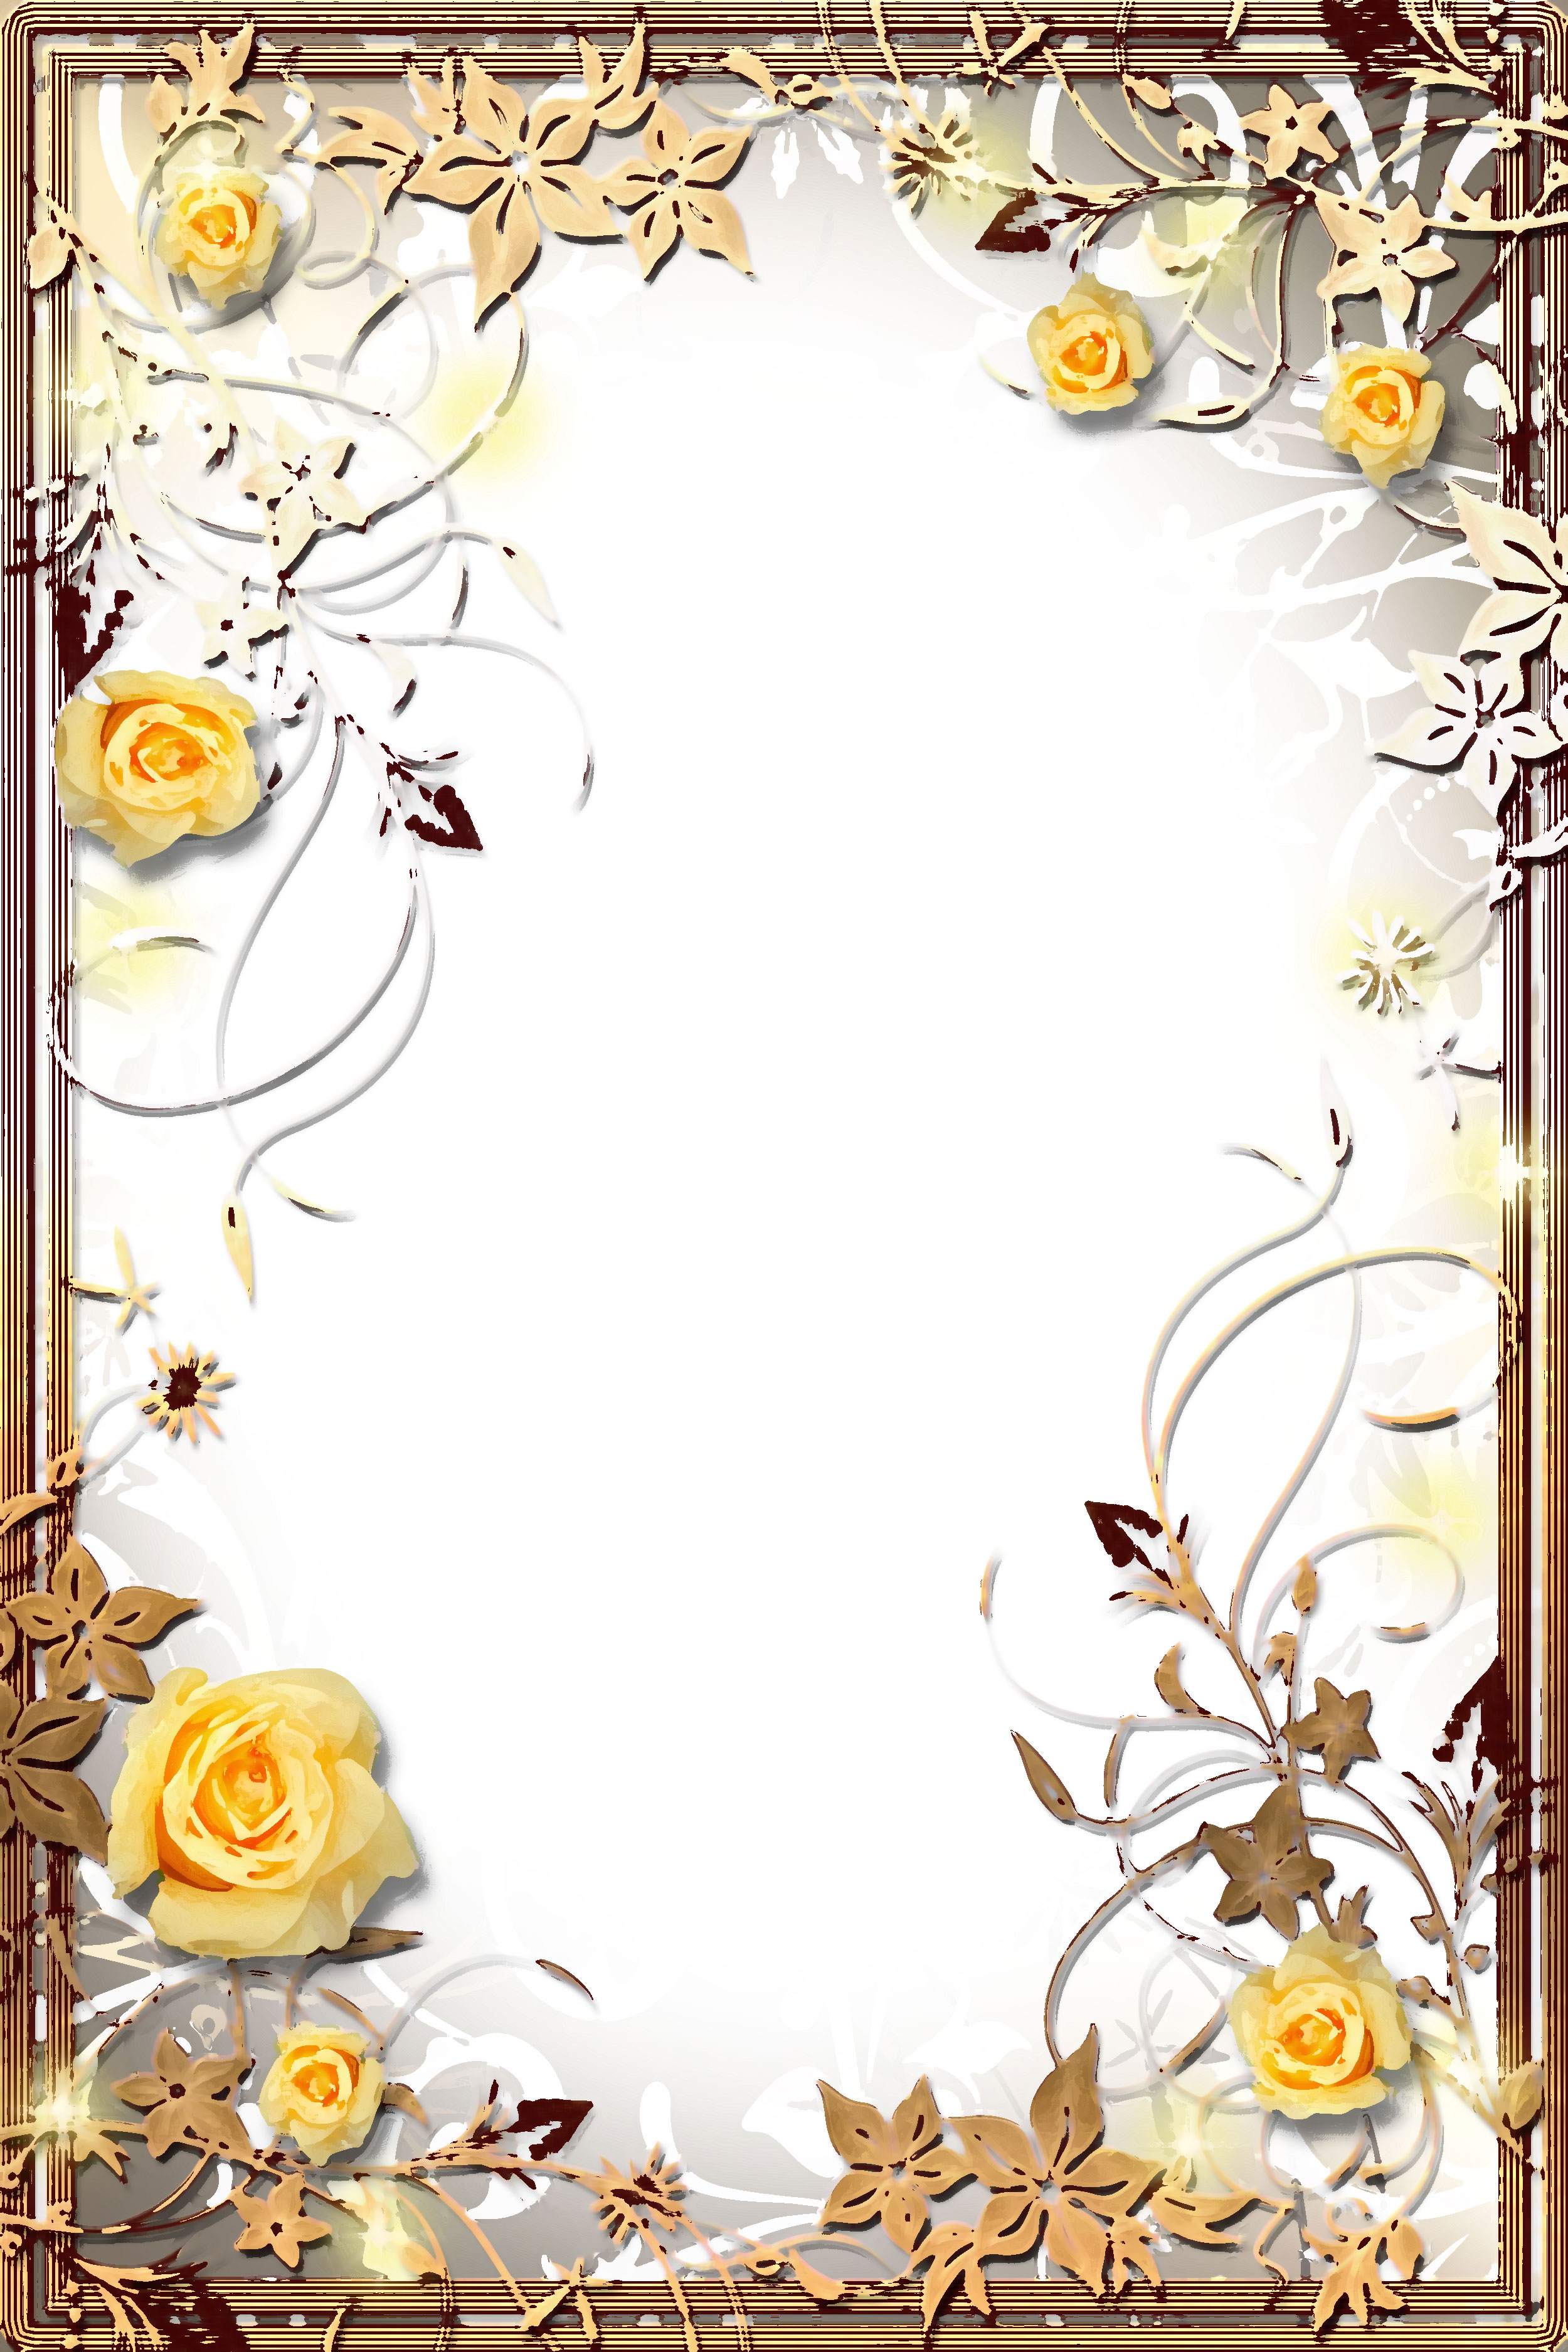 バラの画像 イラスト 壁紙 背景用 No 610 黄色のバラ リアル